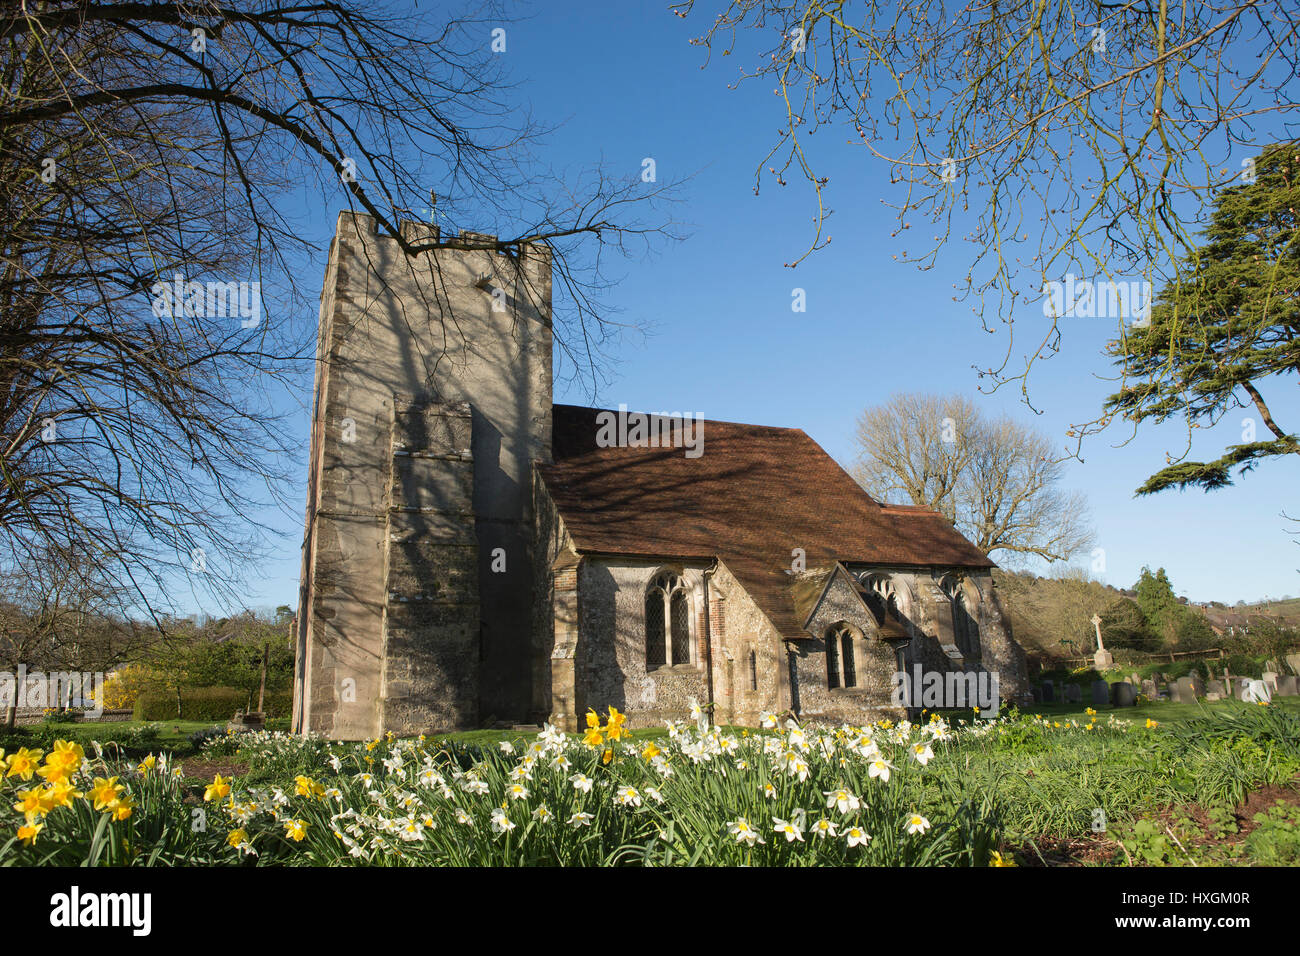 La Bienheureuse Vierge Marie, Singleton dans West Sussex près de Chichester. Journée de printemps avec ciel bleu et fleurs jaunes. Banque D'Images